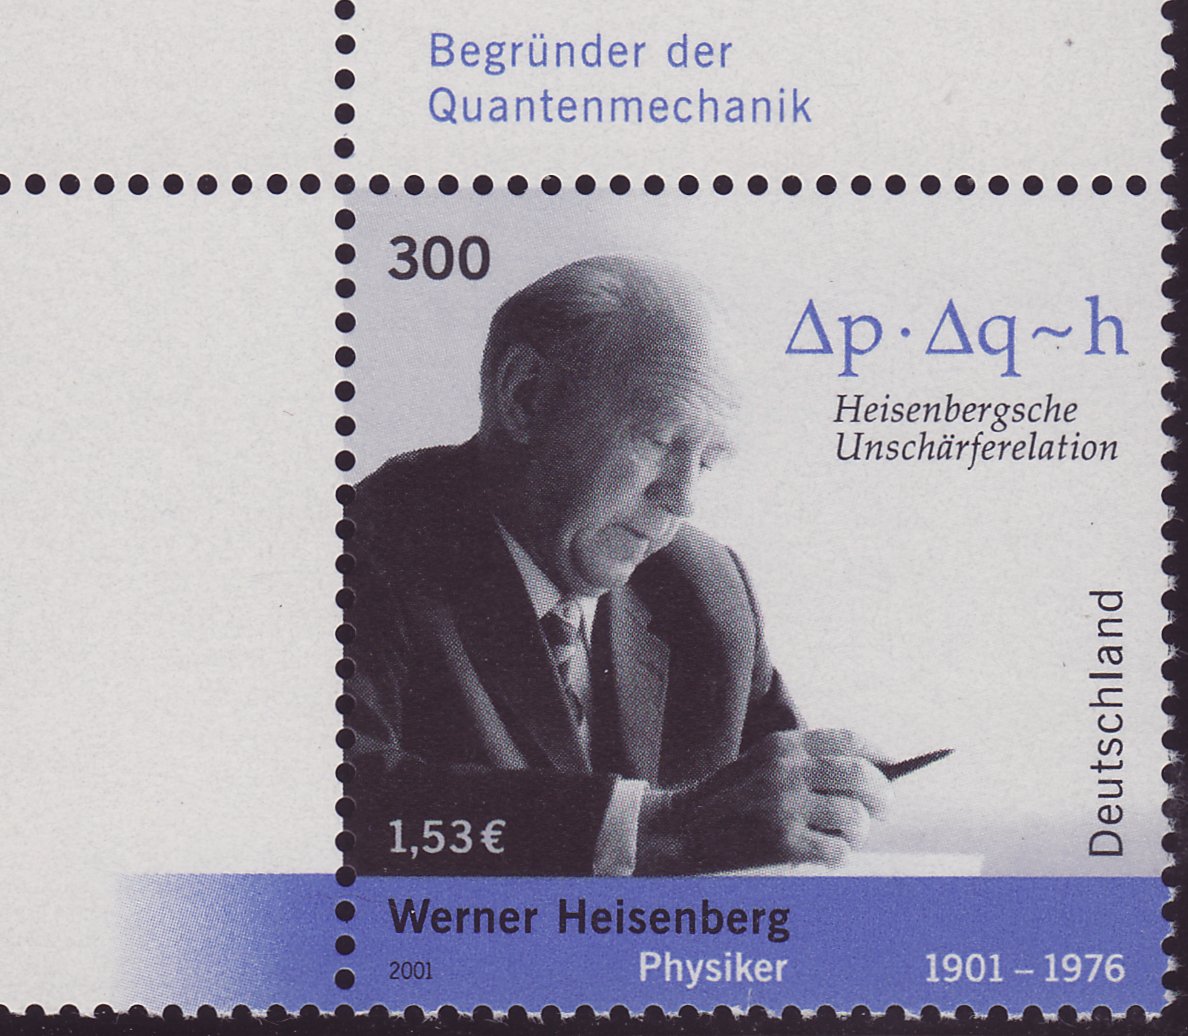 Postzegel van de Duitse Post, 2001